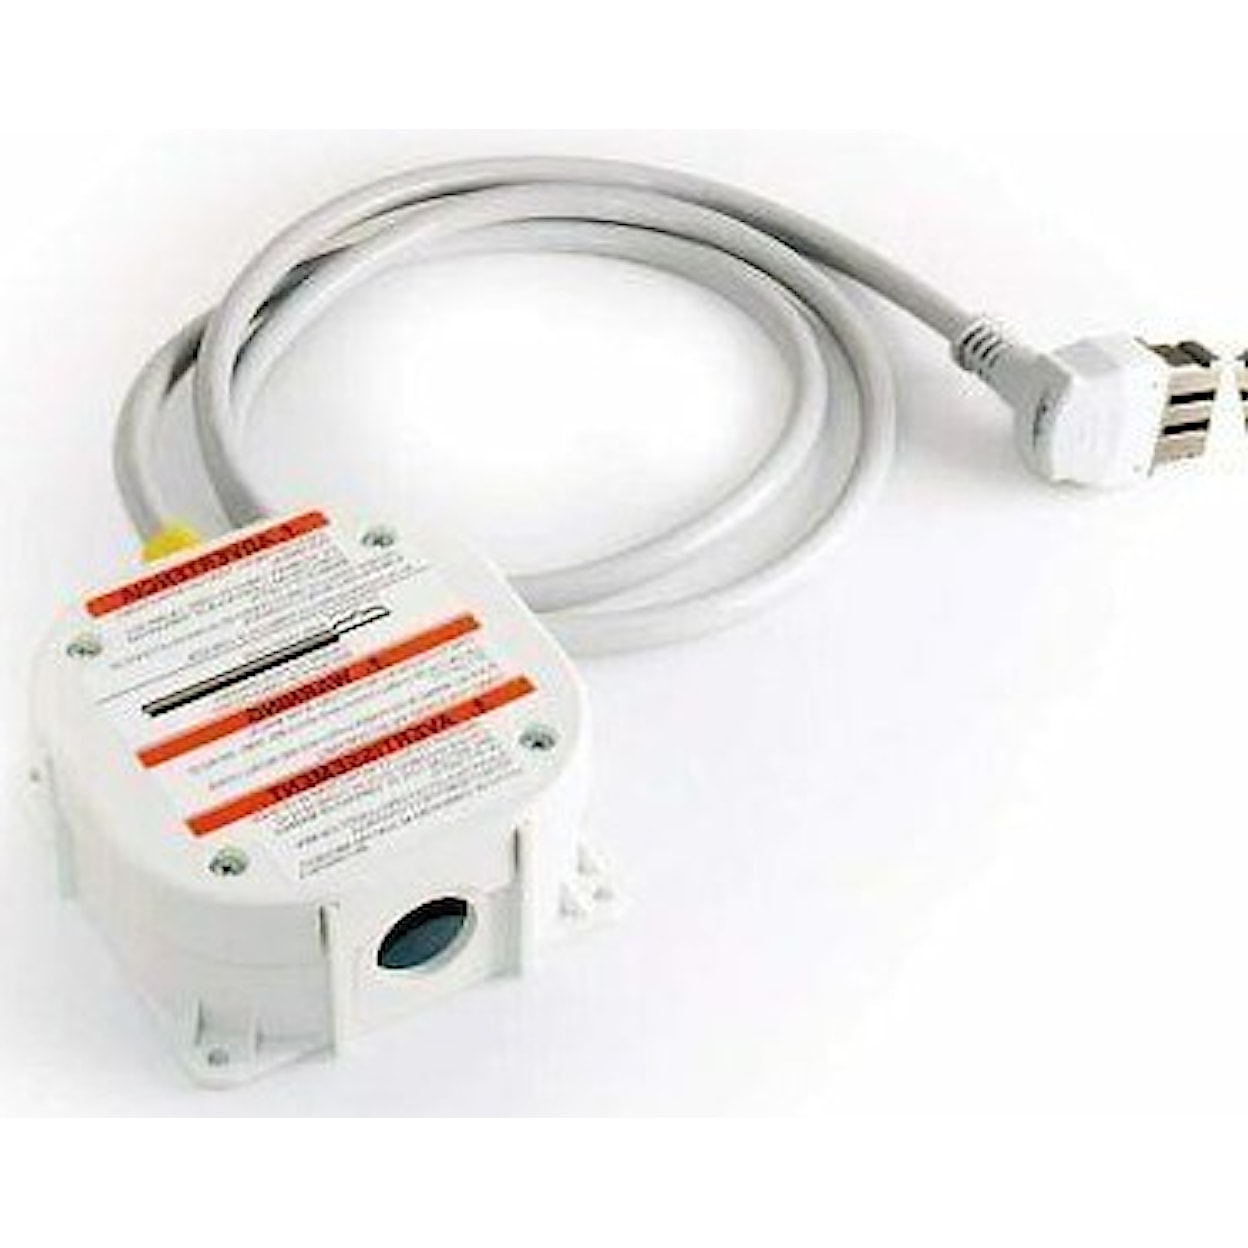 Dealer Brand Accessories Bosch Dishwasher Power Connection Kit